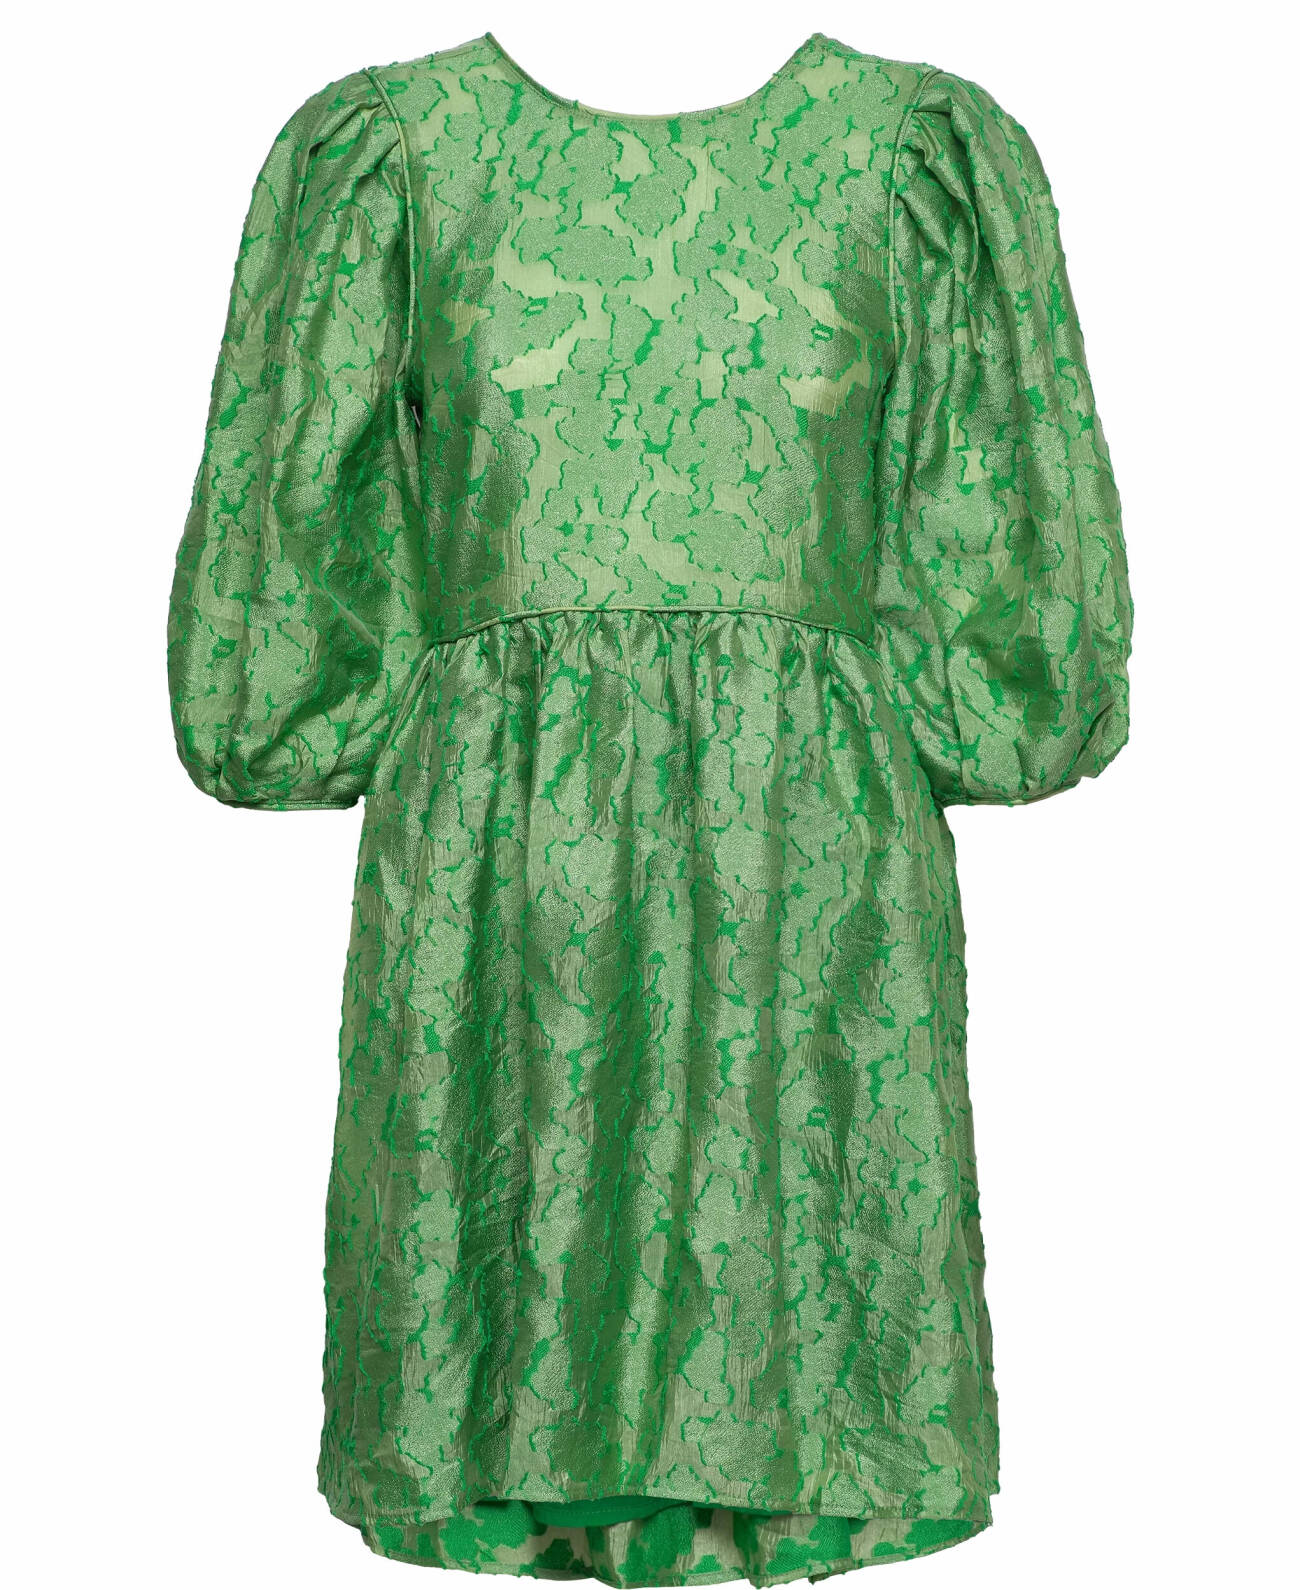 grön klänning dam med puffärm och mönster